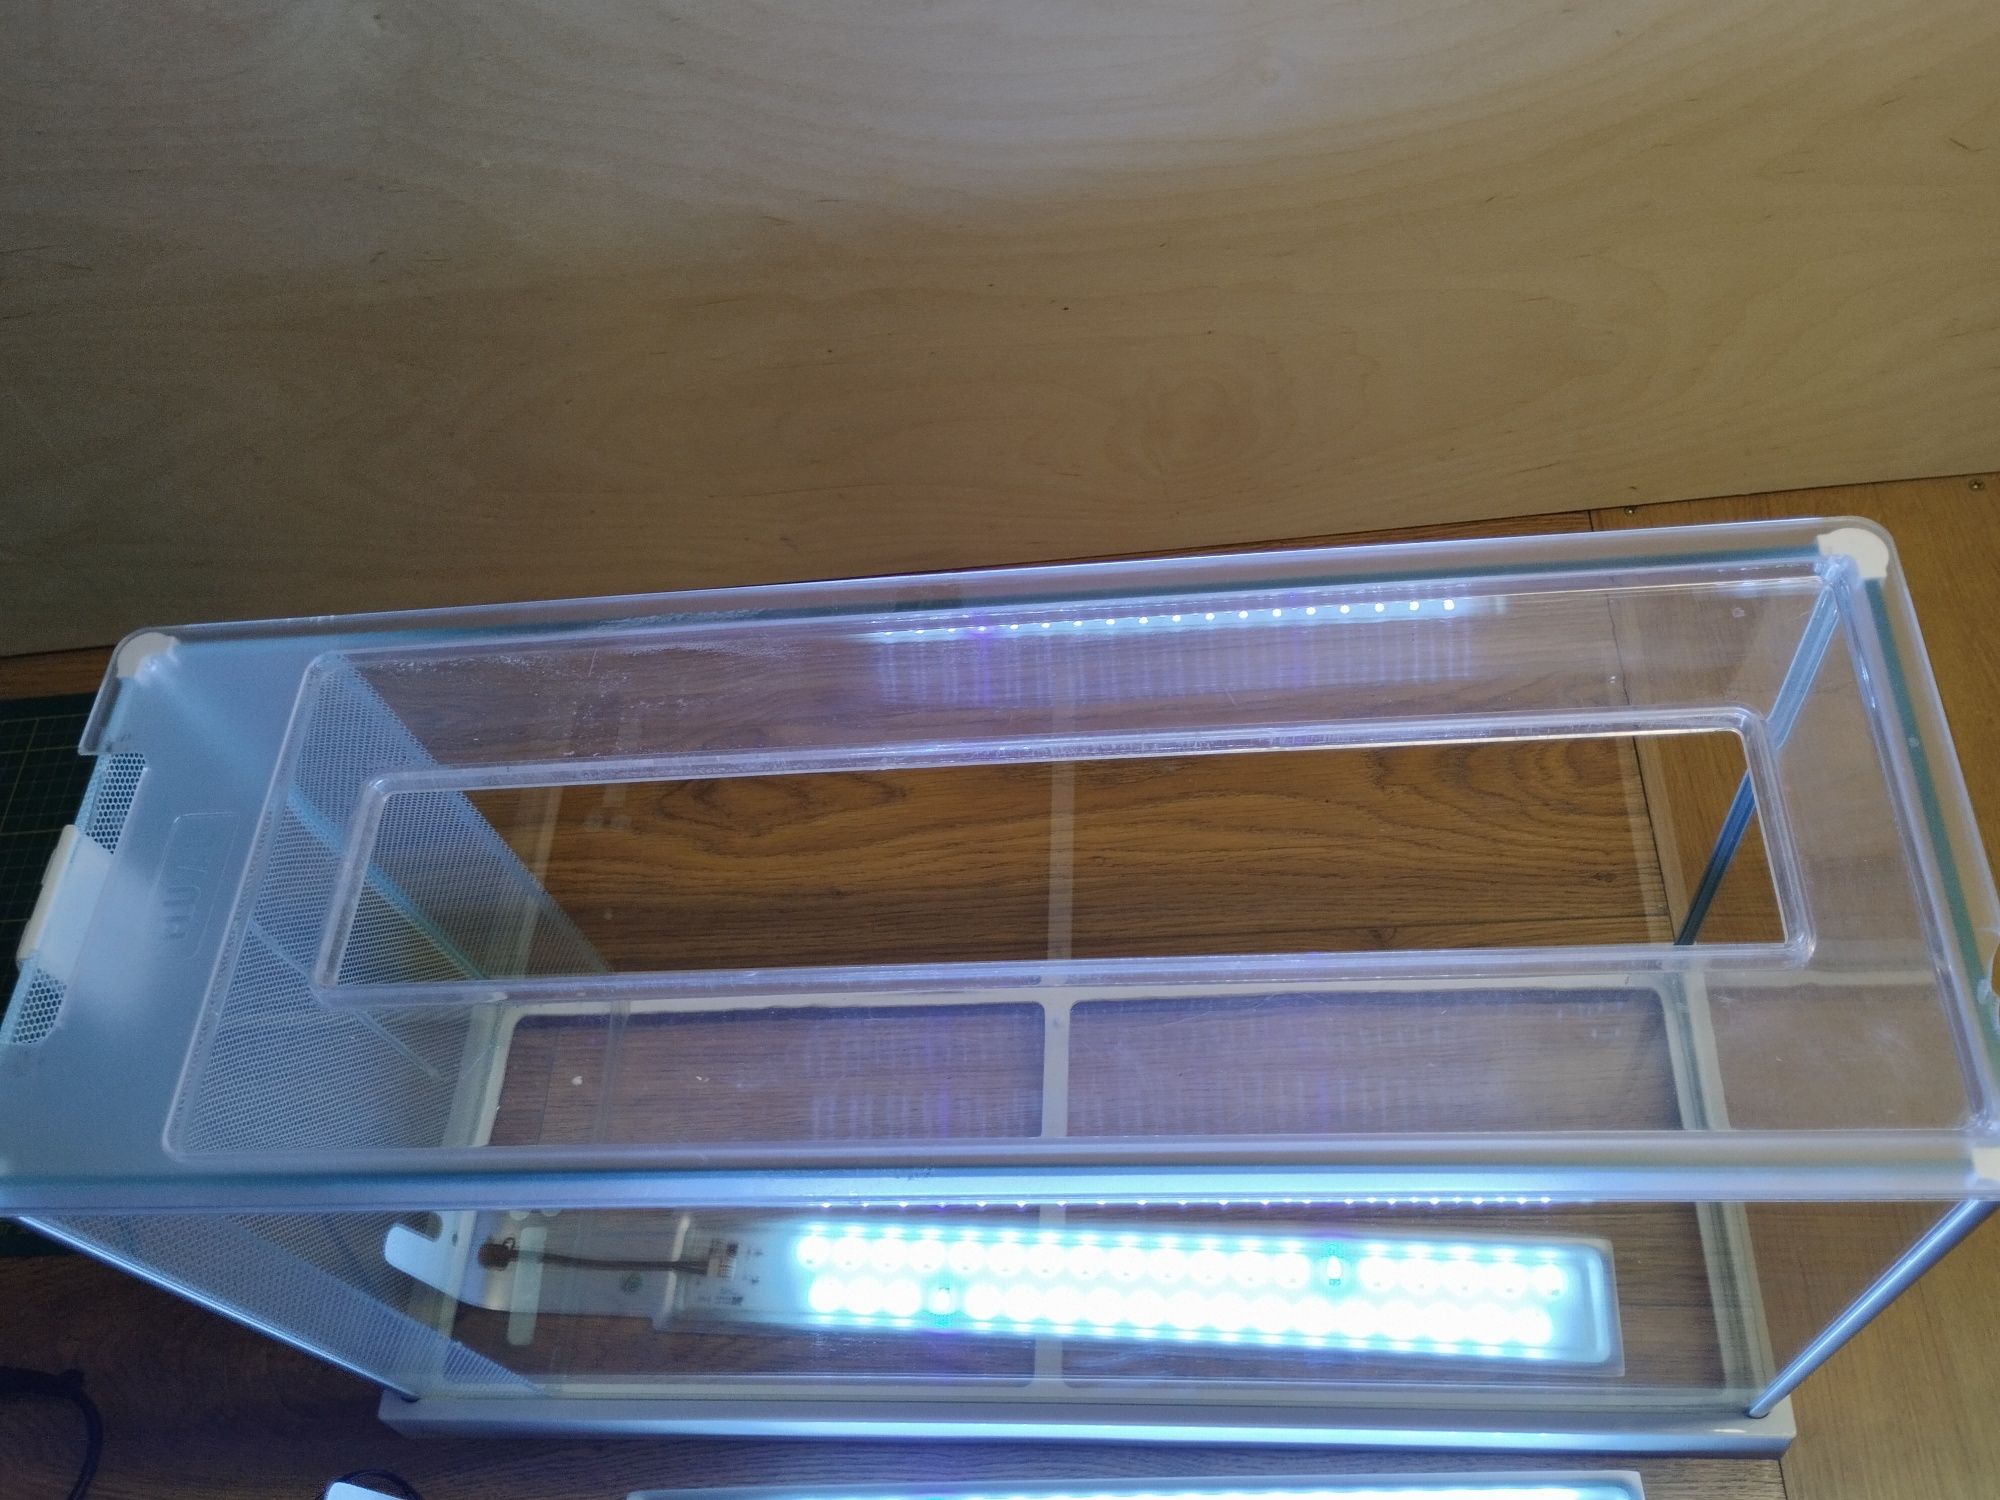 Akwarium szklane FLUVAL SPEC V Z LED, 19L, 52 CM X 29.5 CM X 19 CM, B